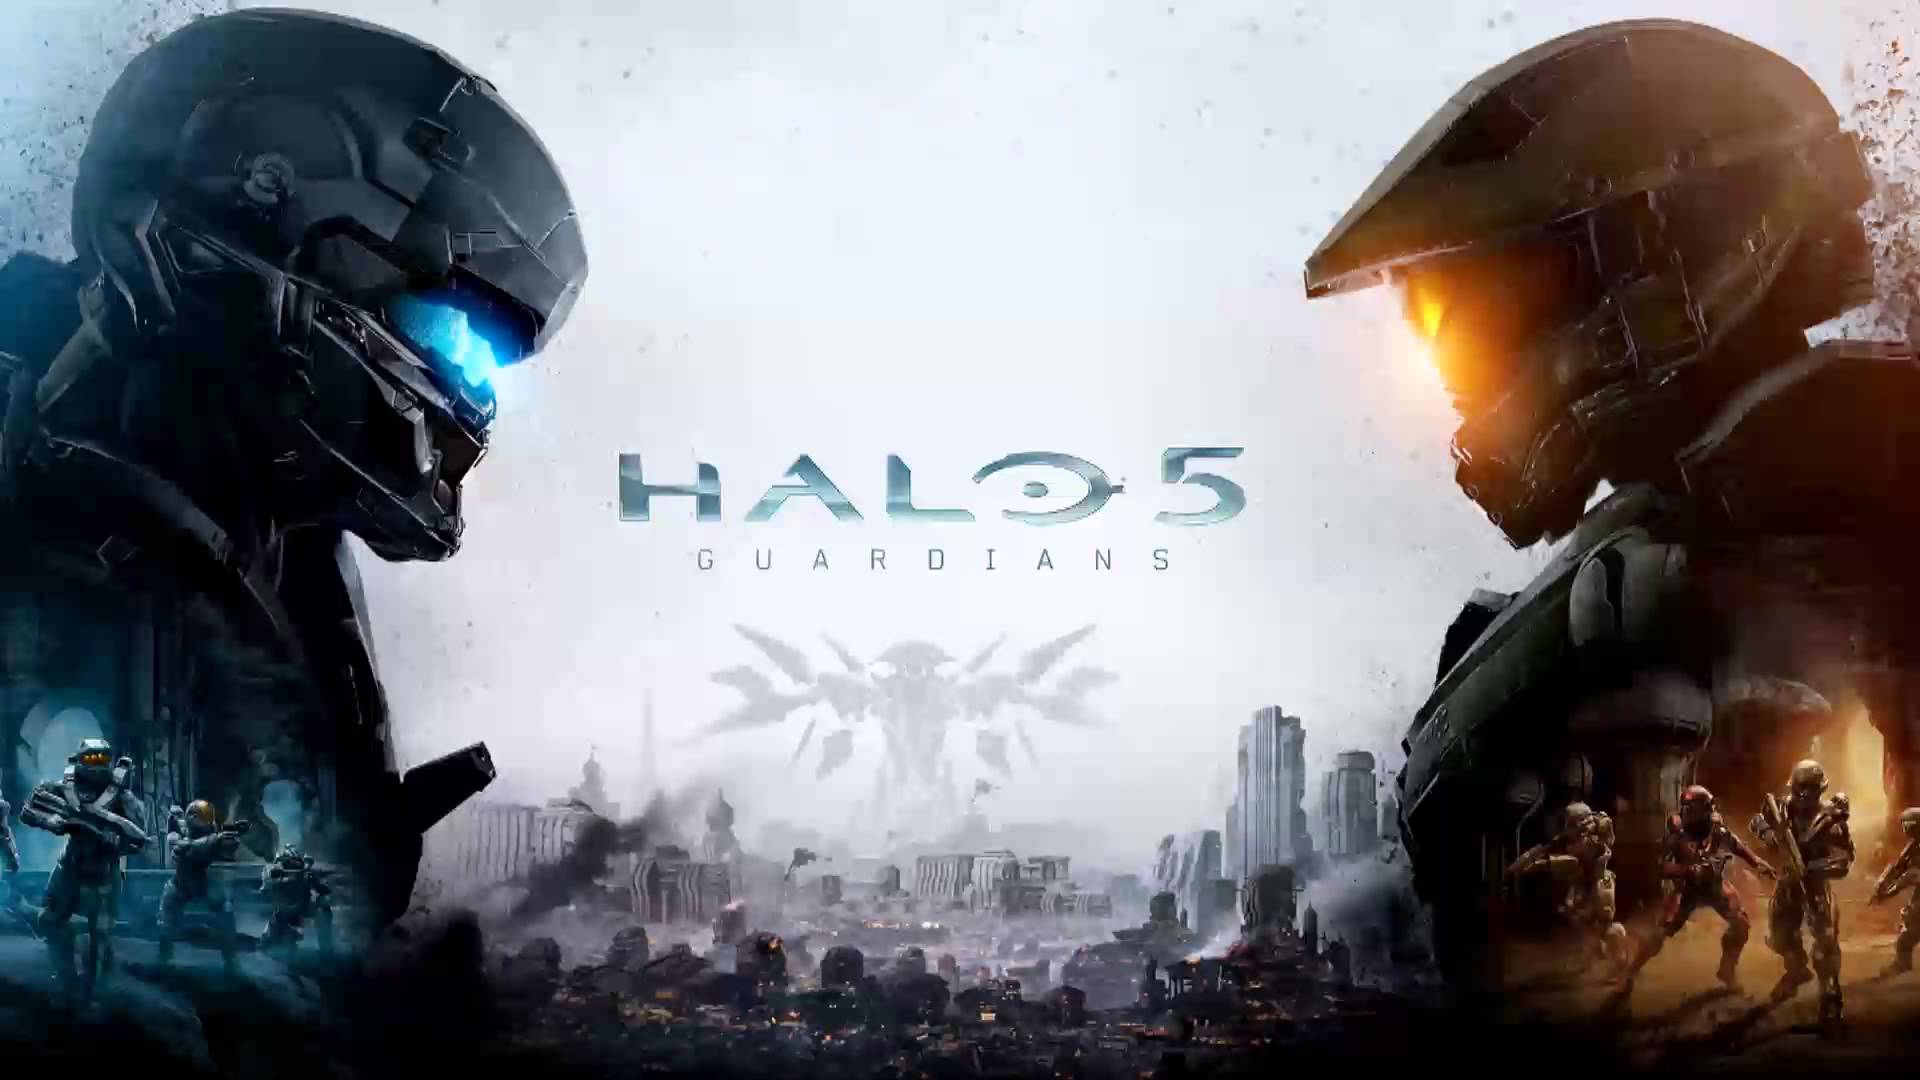 Halo 5 Guardians Full Album / Soundtracks - YouTube